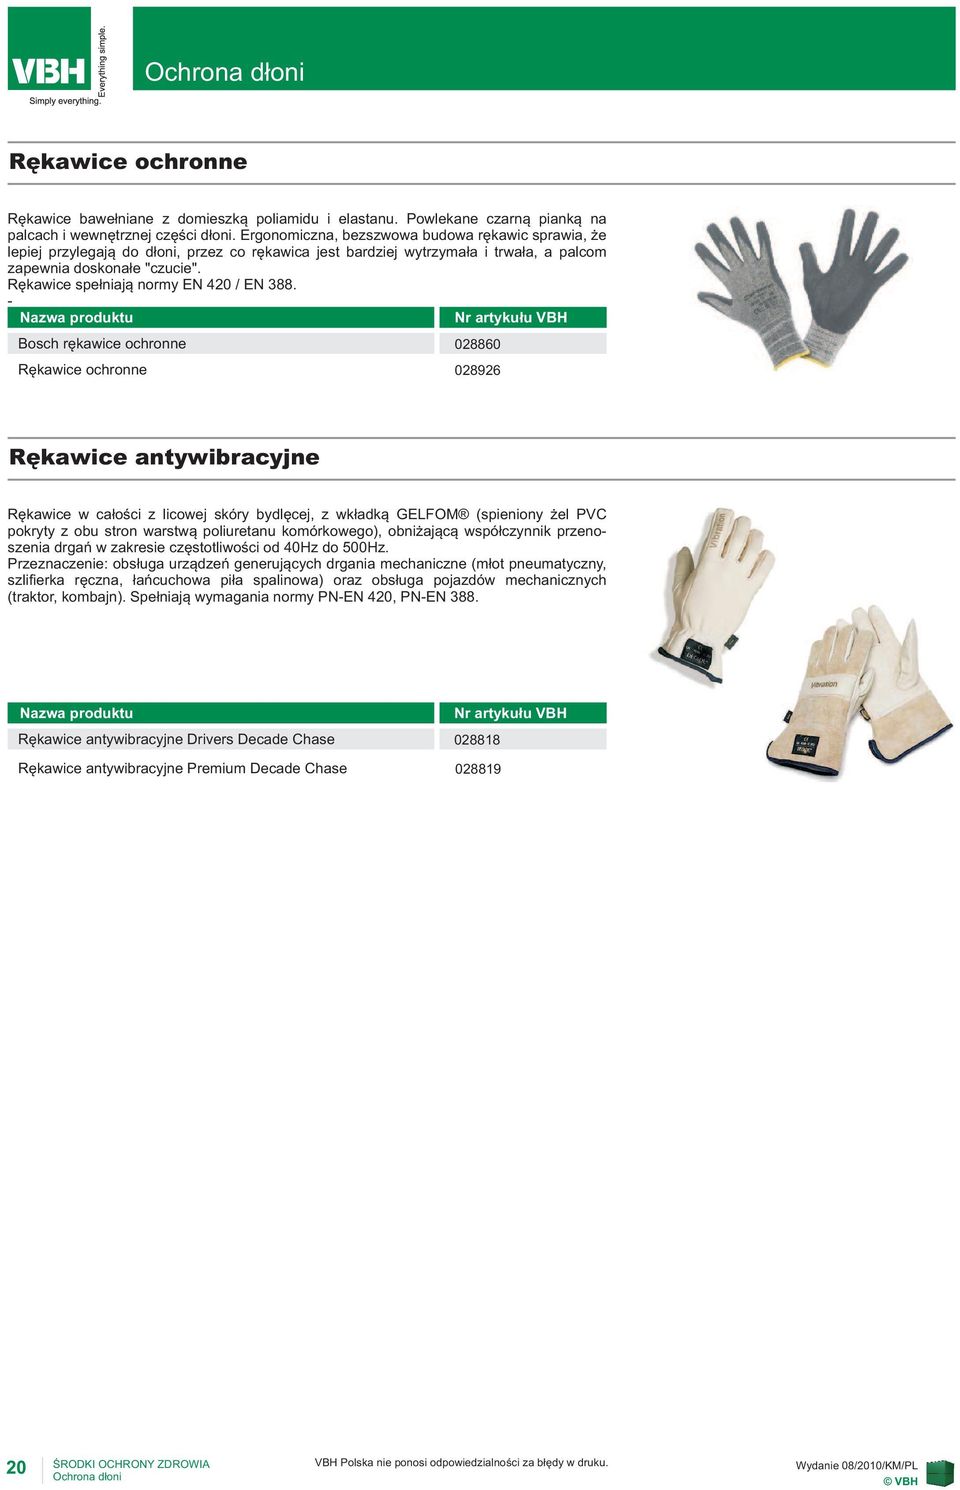 Rękawice spełniają normy EN 420 / EN 388.